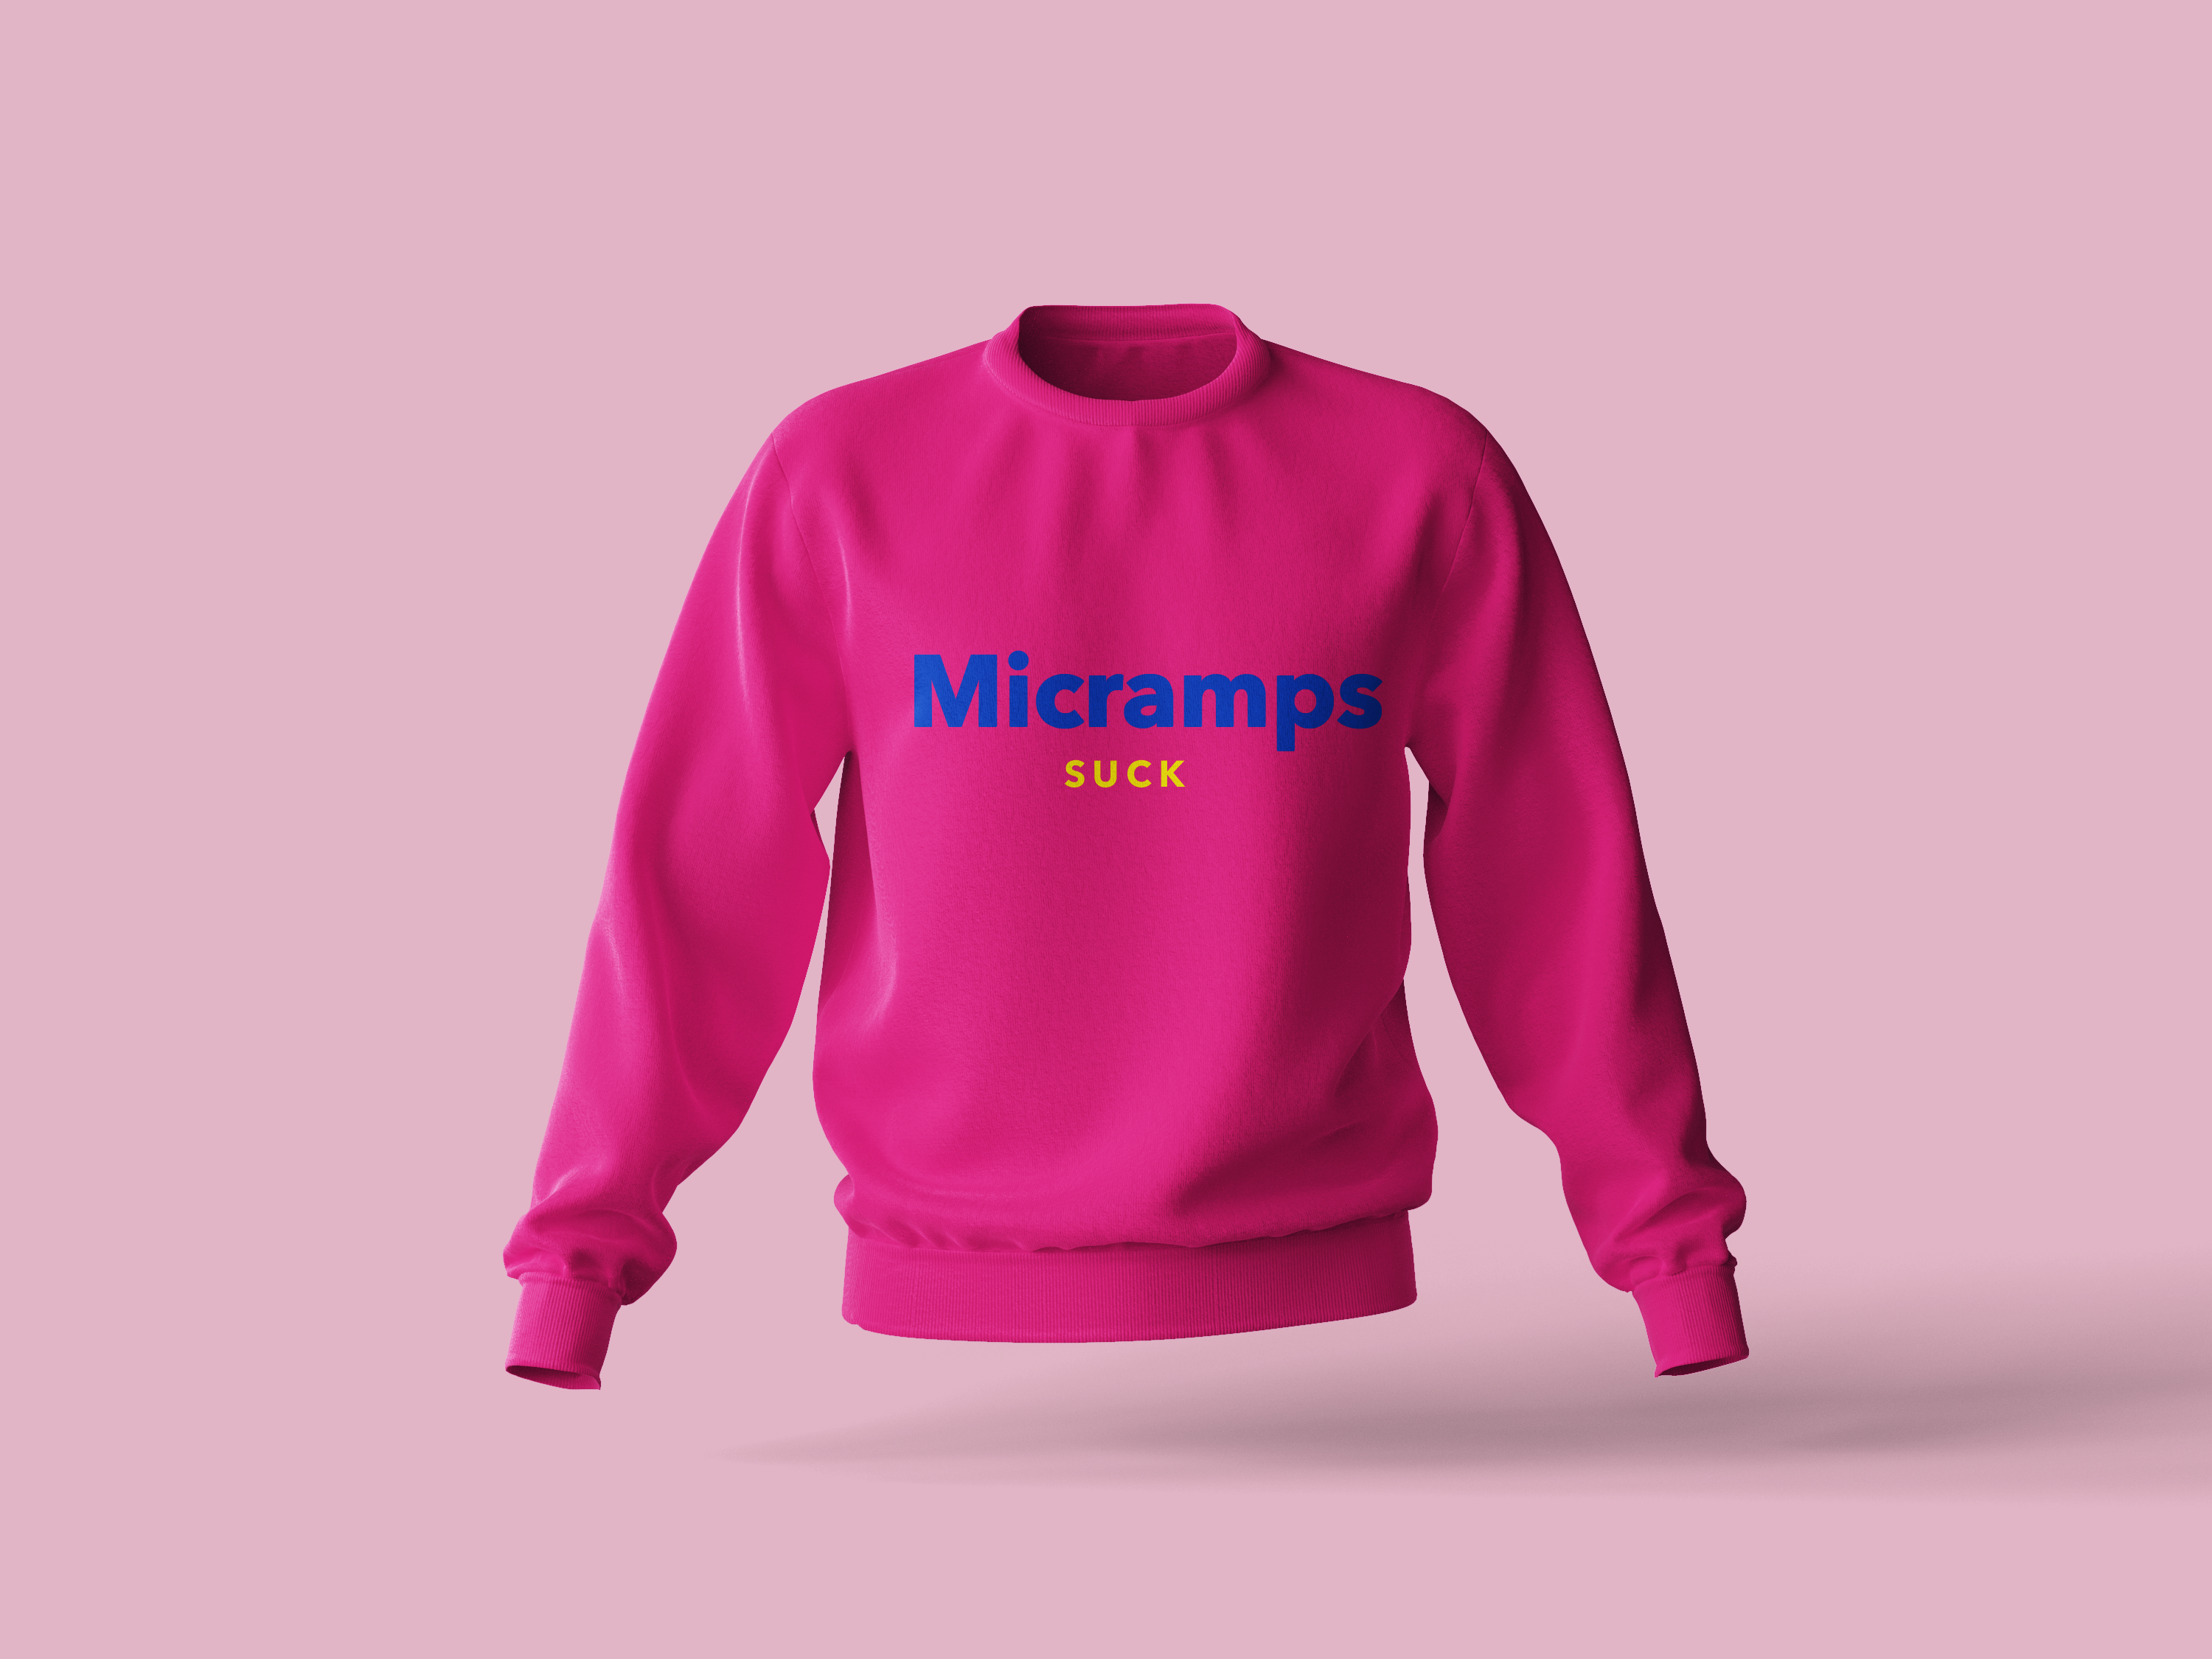 Micramps Suck Sweatshirt